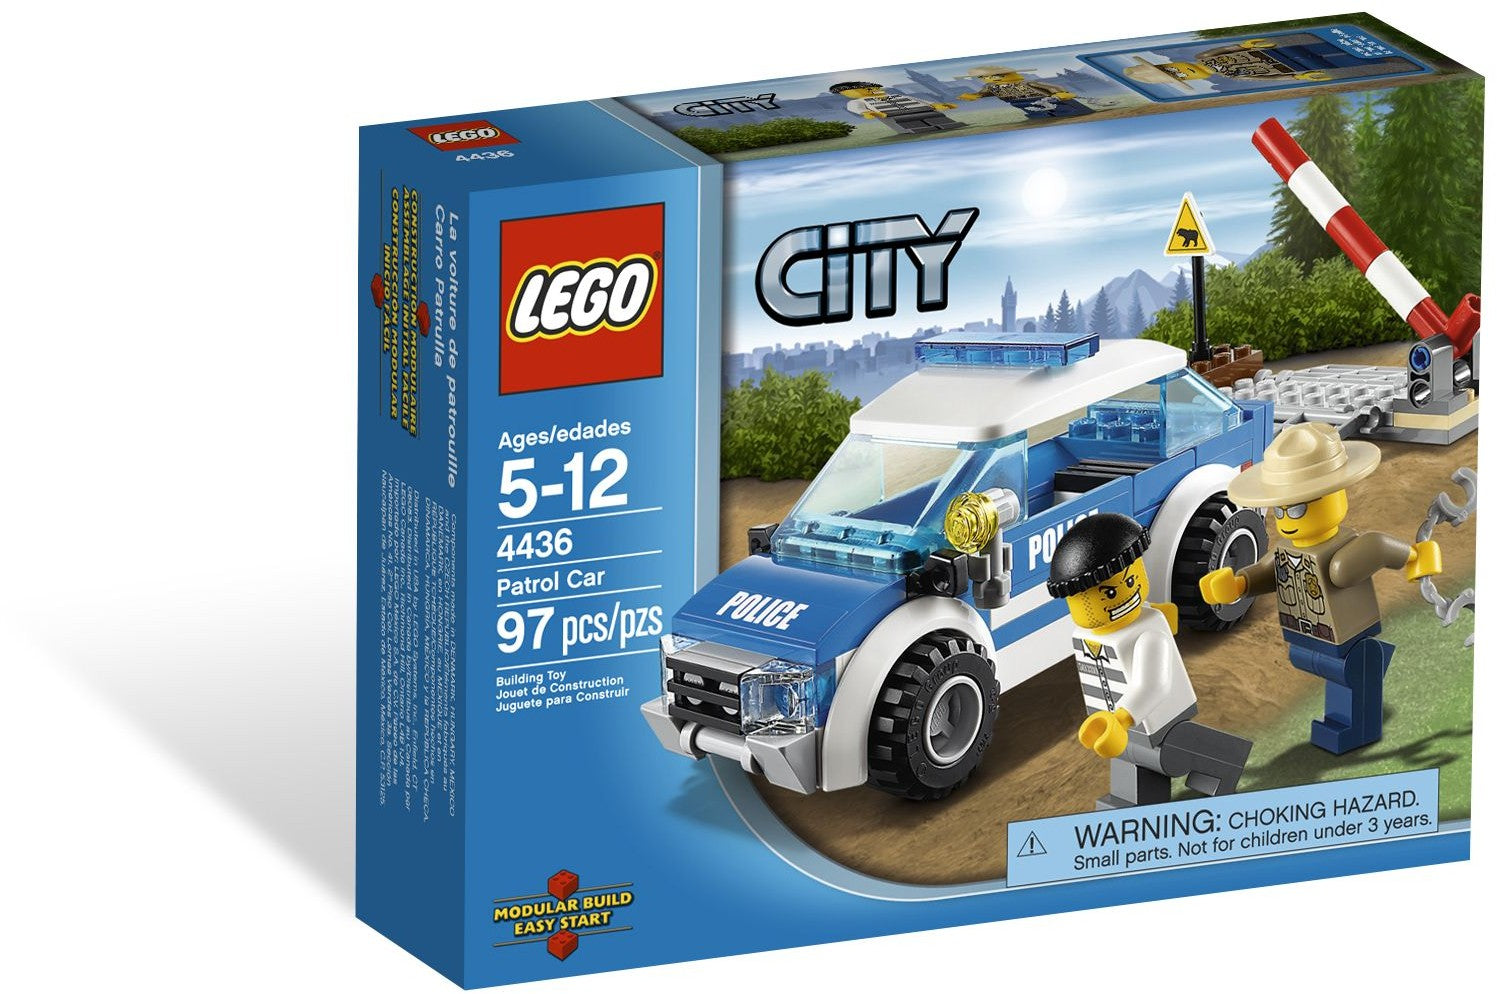 Lego City 4436 - Patrol Car